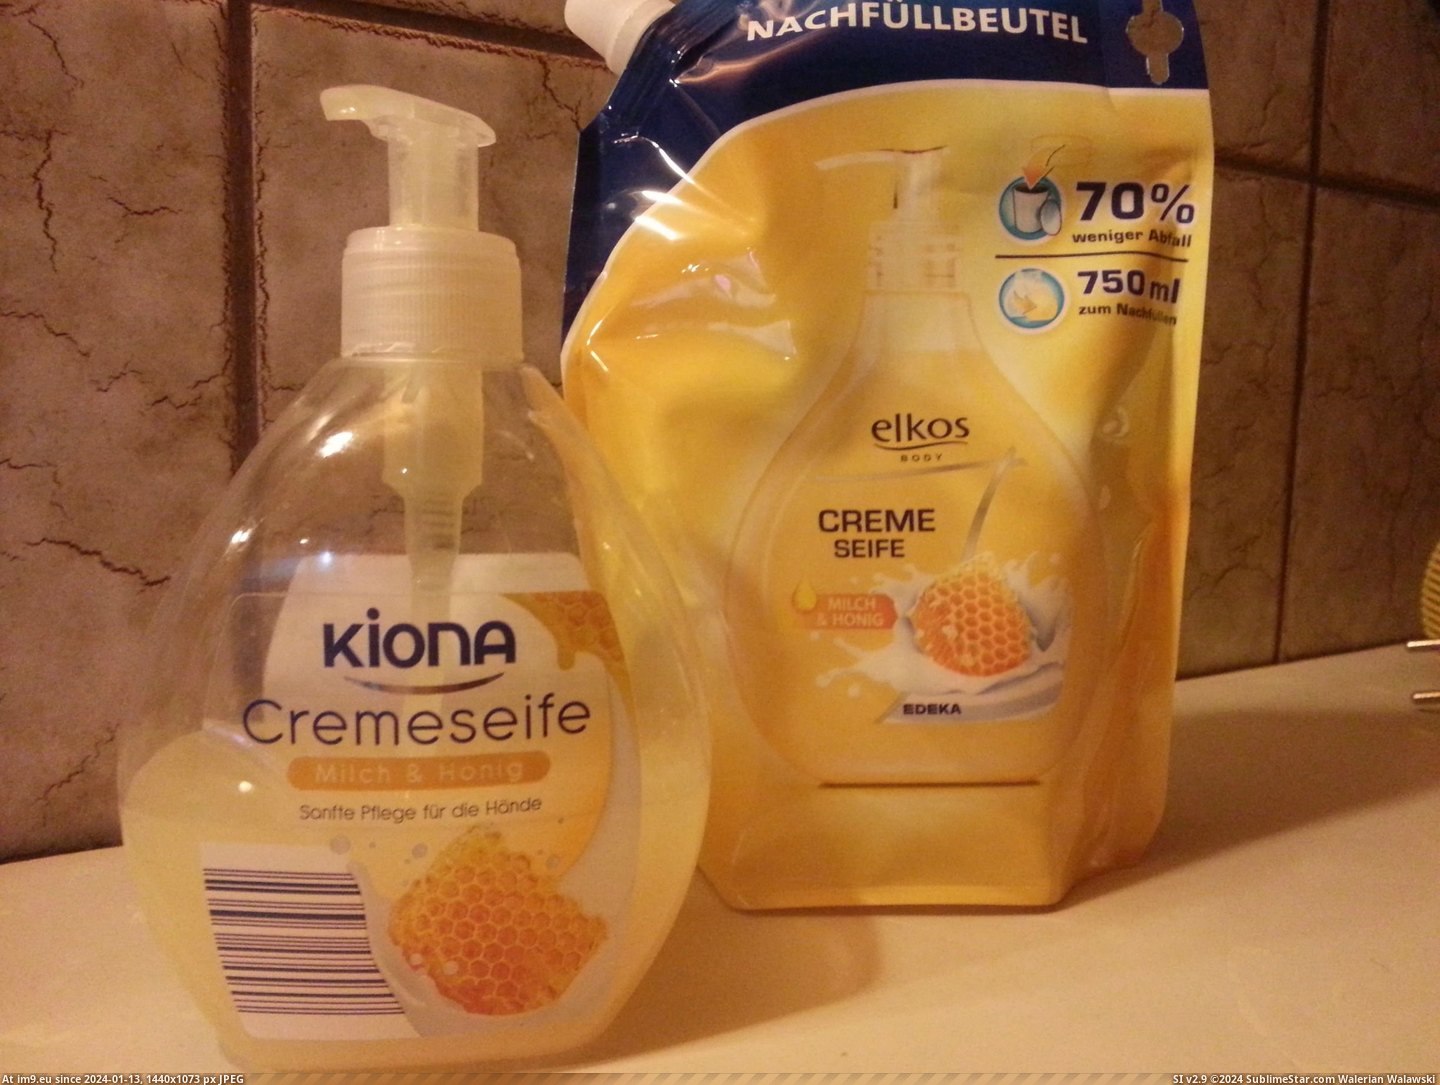 #Design #Brands #Virtually #Soap [Mildlyinteresting] Different soap brands, virtually the same design. Pic. (Bild von album My r/MILDLYINTERESTING favs))